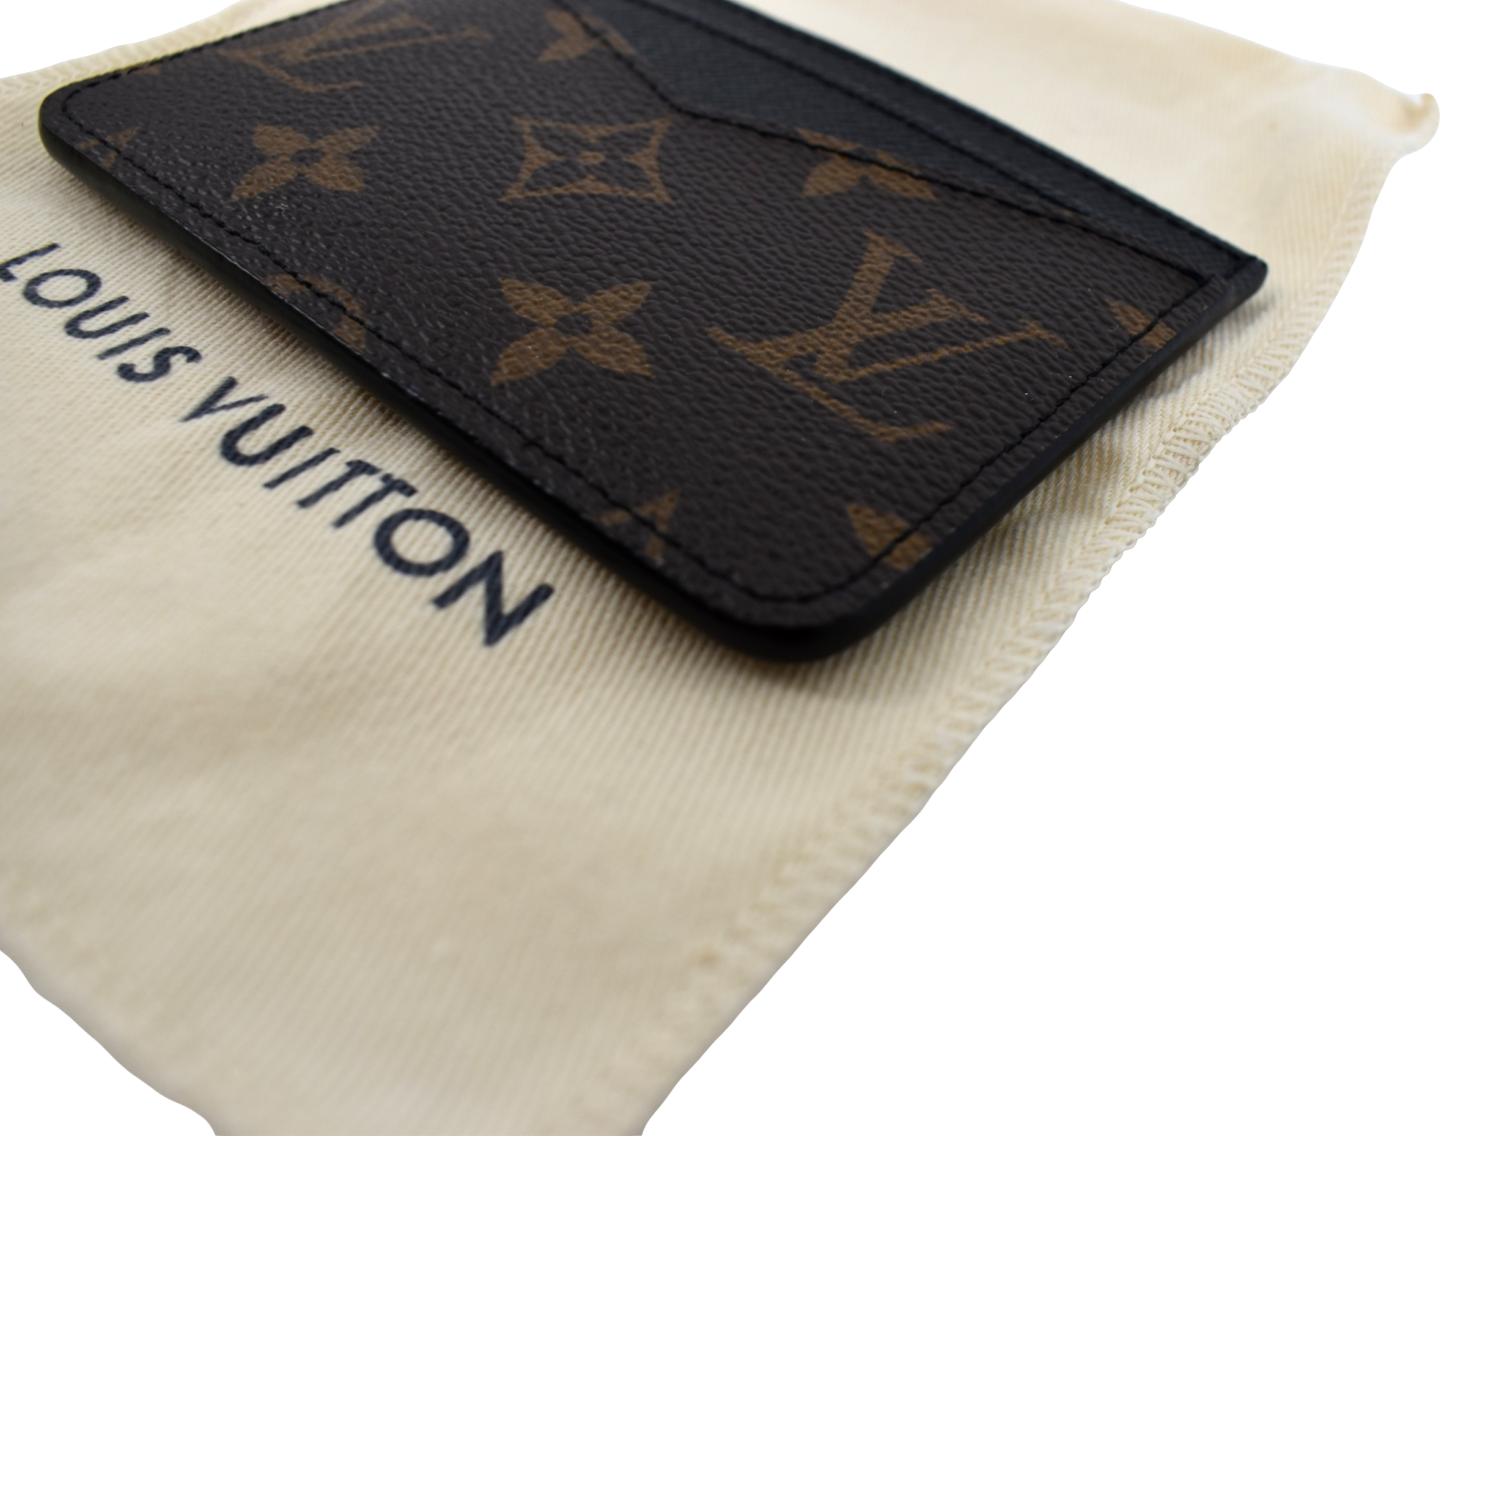 Louis Vuitton Id Case 